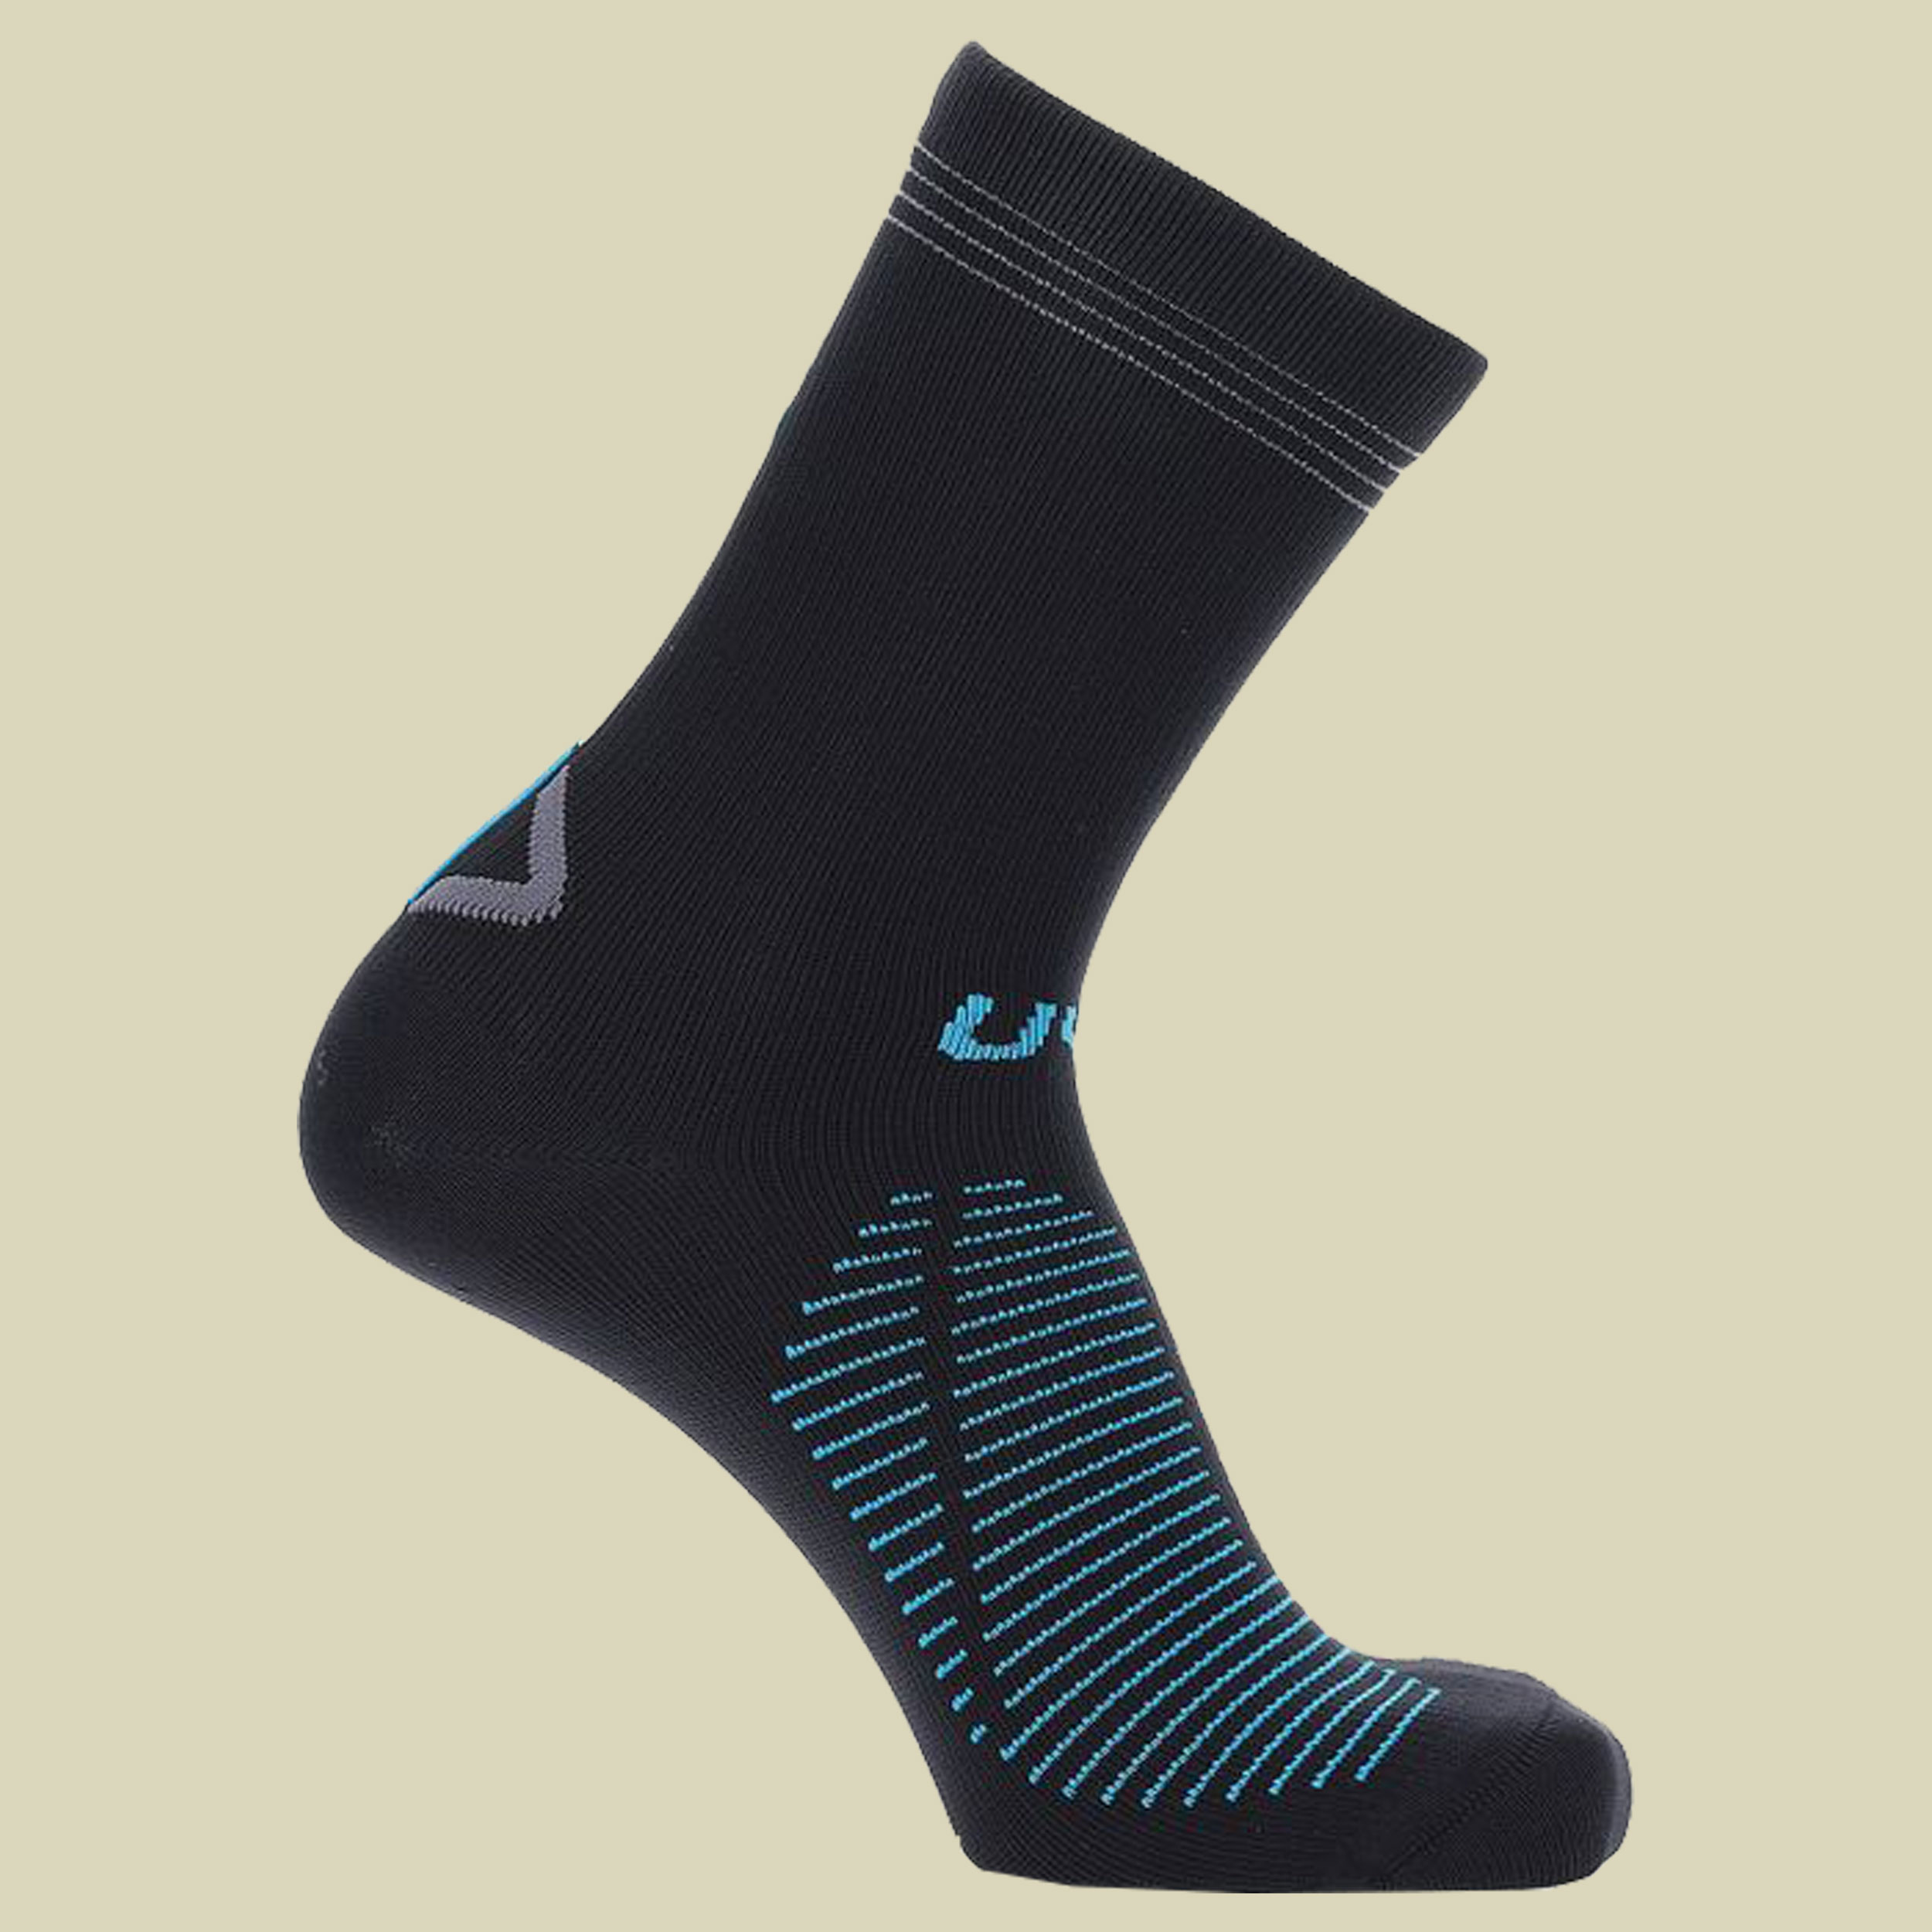 Waterproof Socks Größe 39-41 Farbe black / turquoise